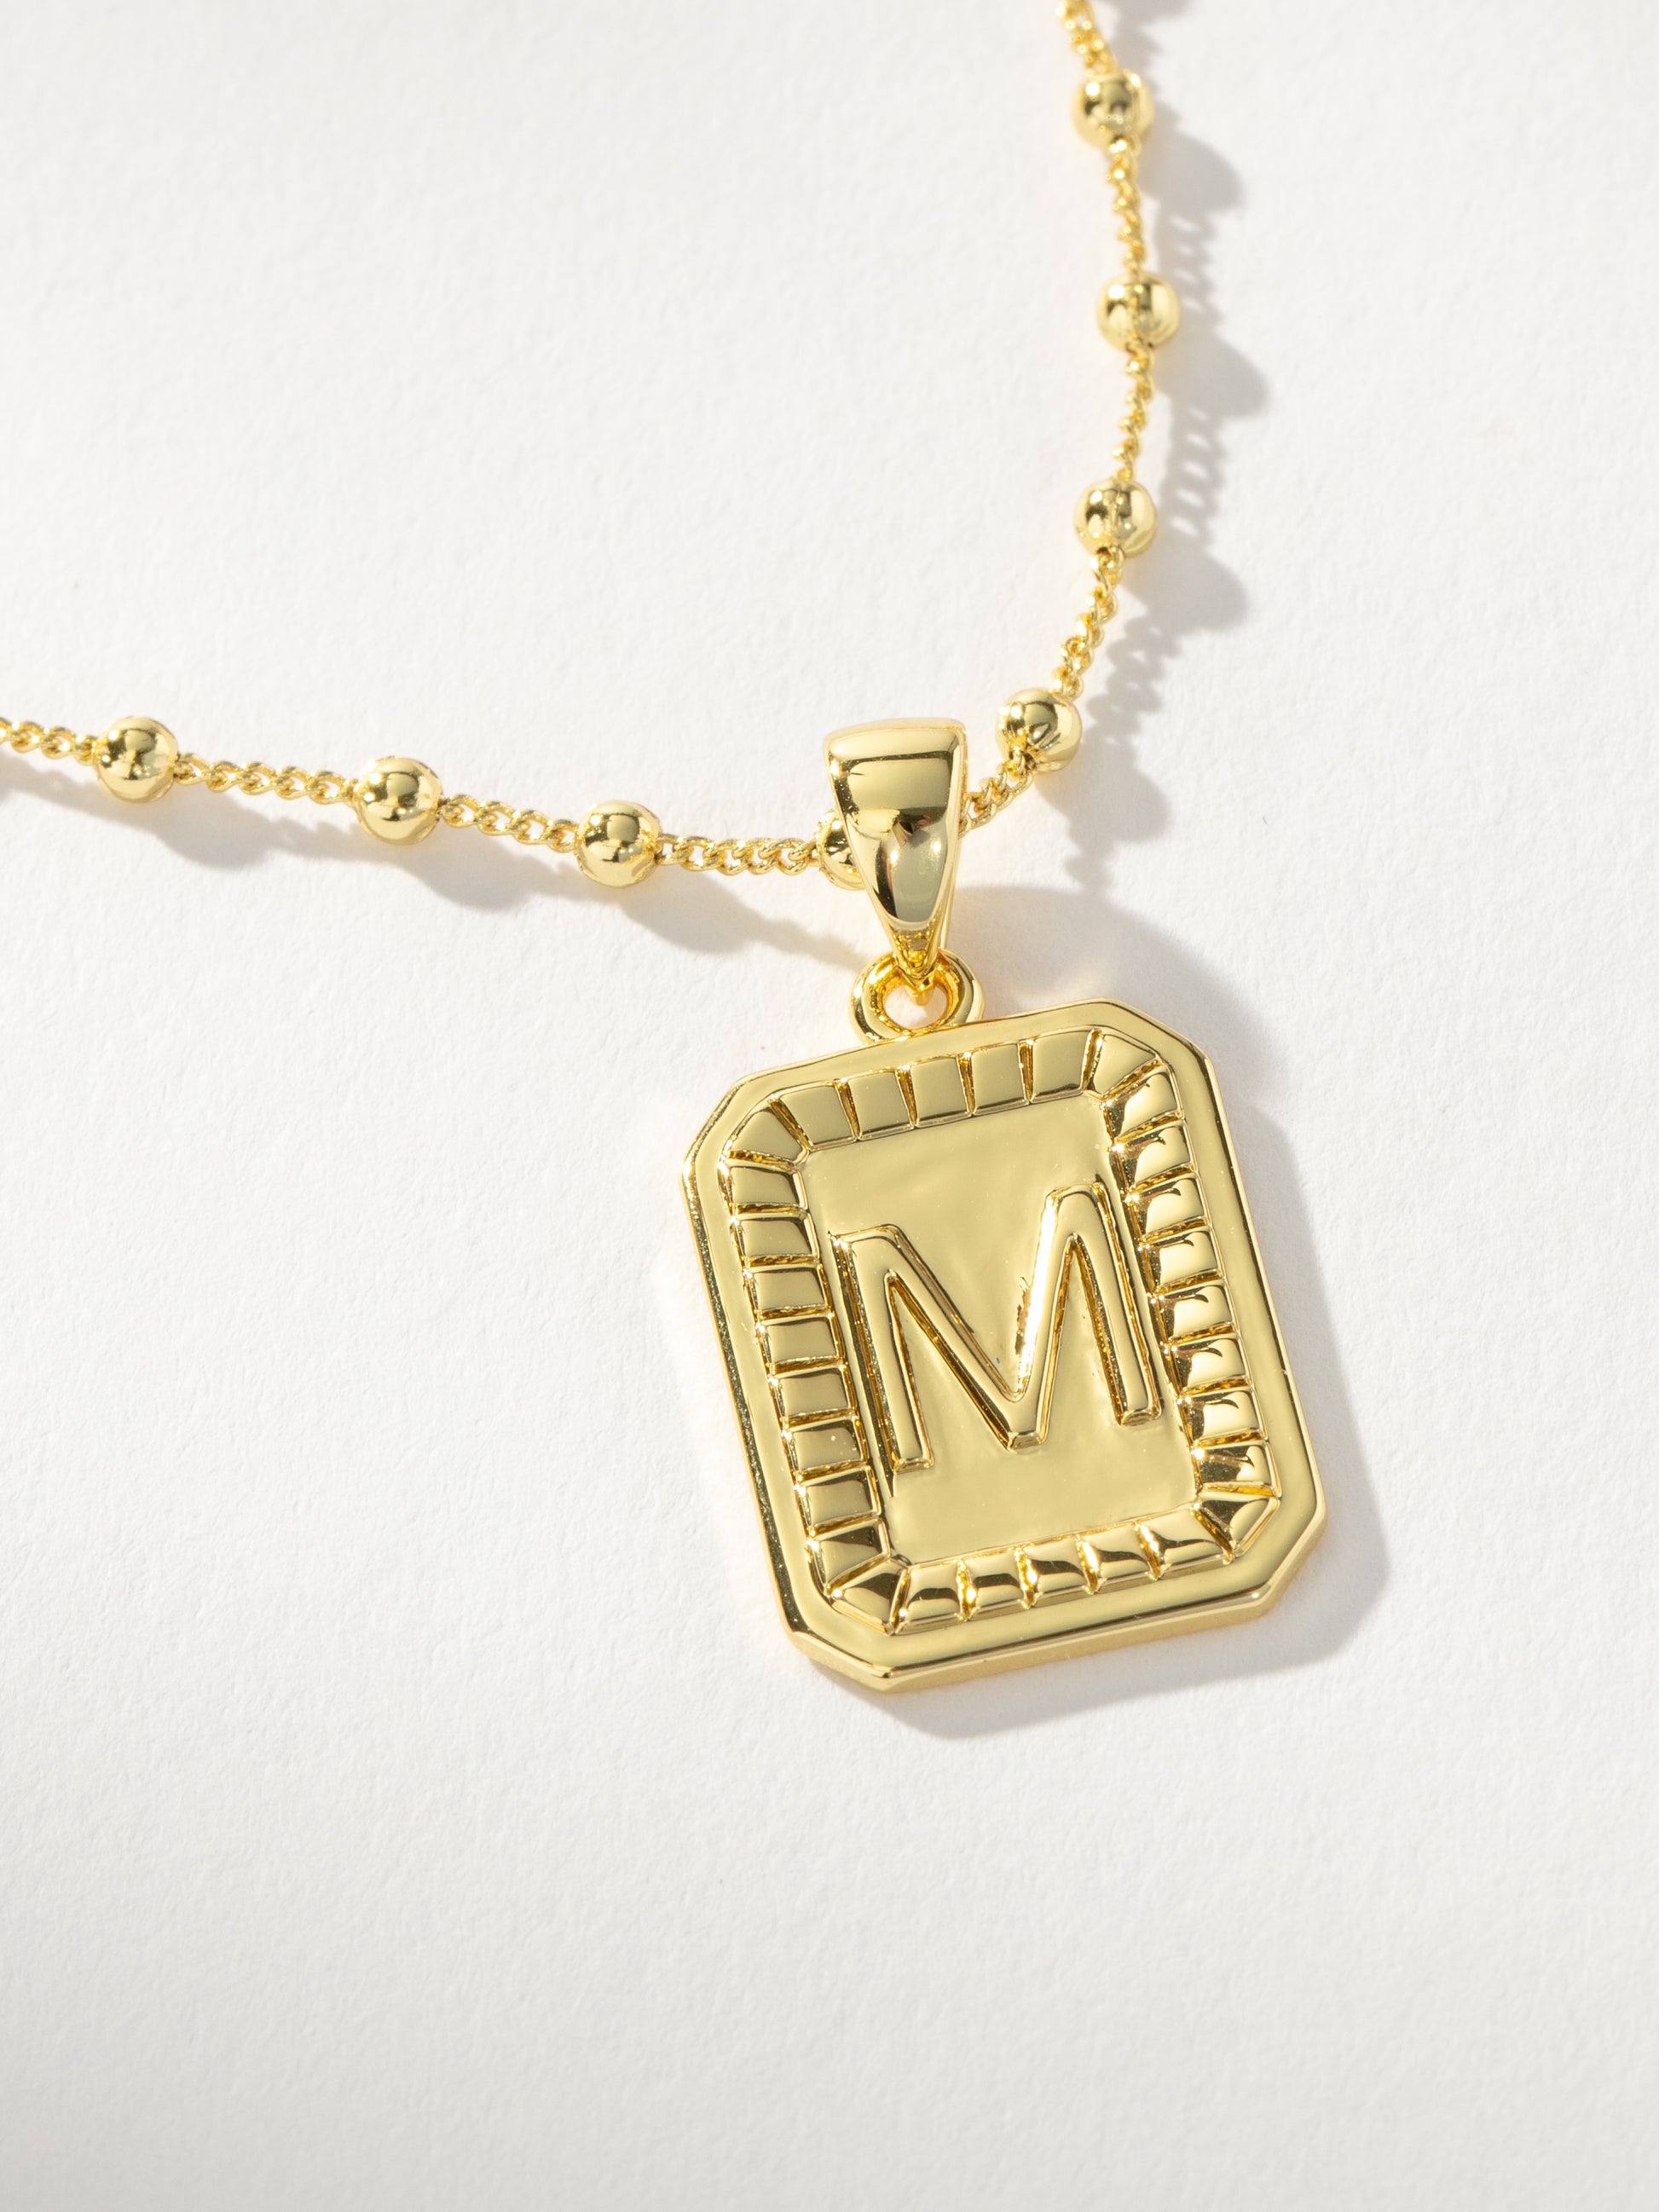 Sur Necklace | Gold M | Product Image | Uncommon James